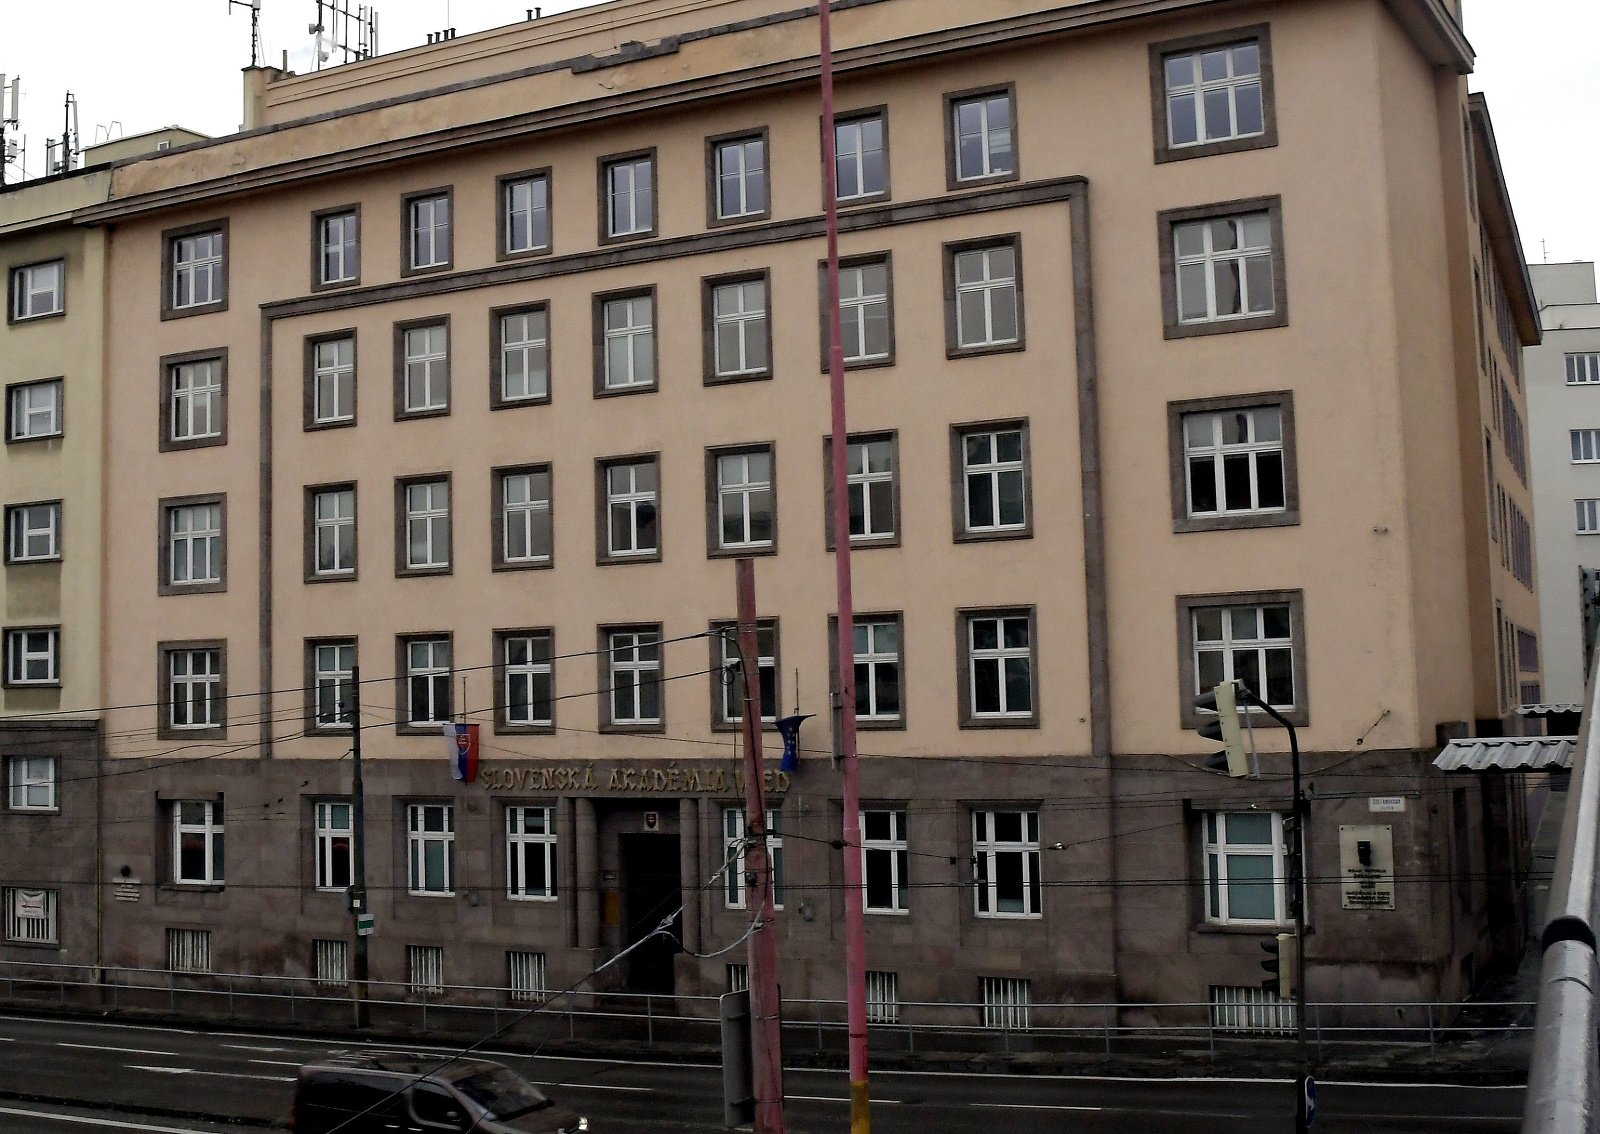 Budova Slovenskej akadémie vied